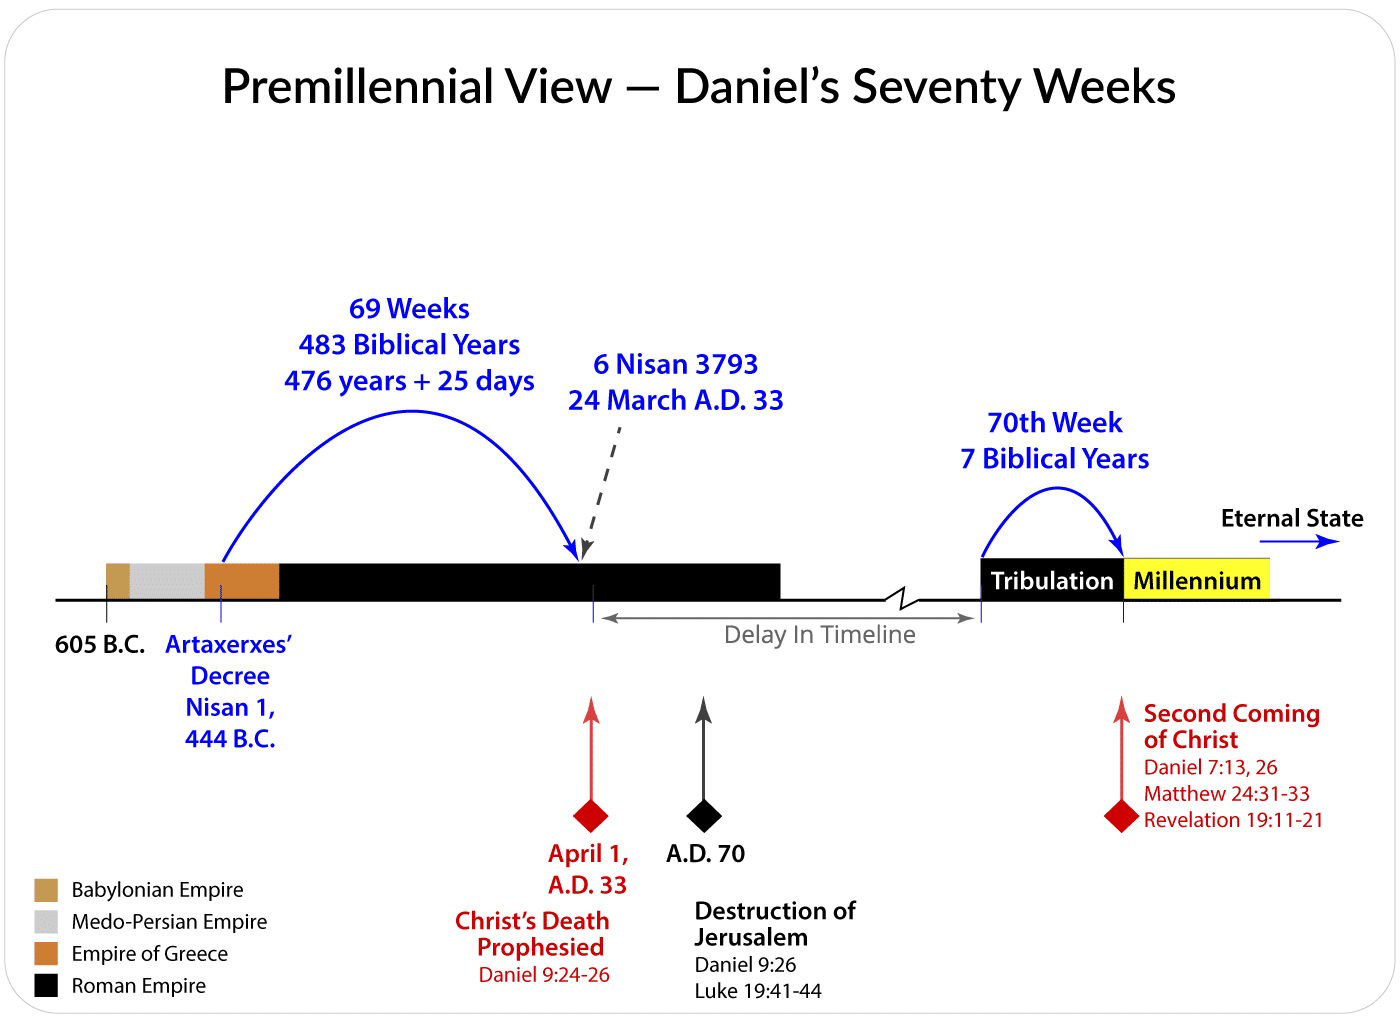 Premillennial View of Daniel's Seventy Weeks